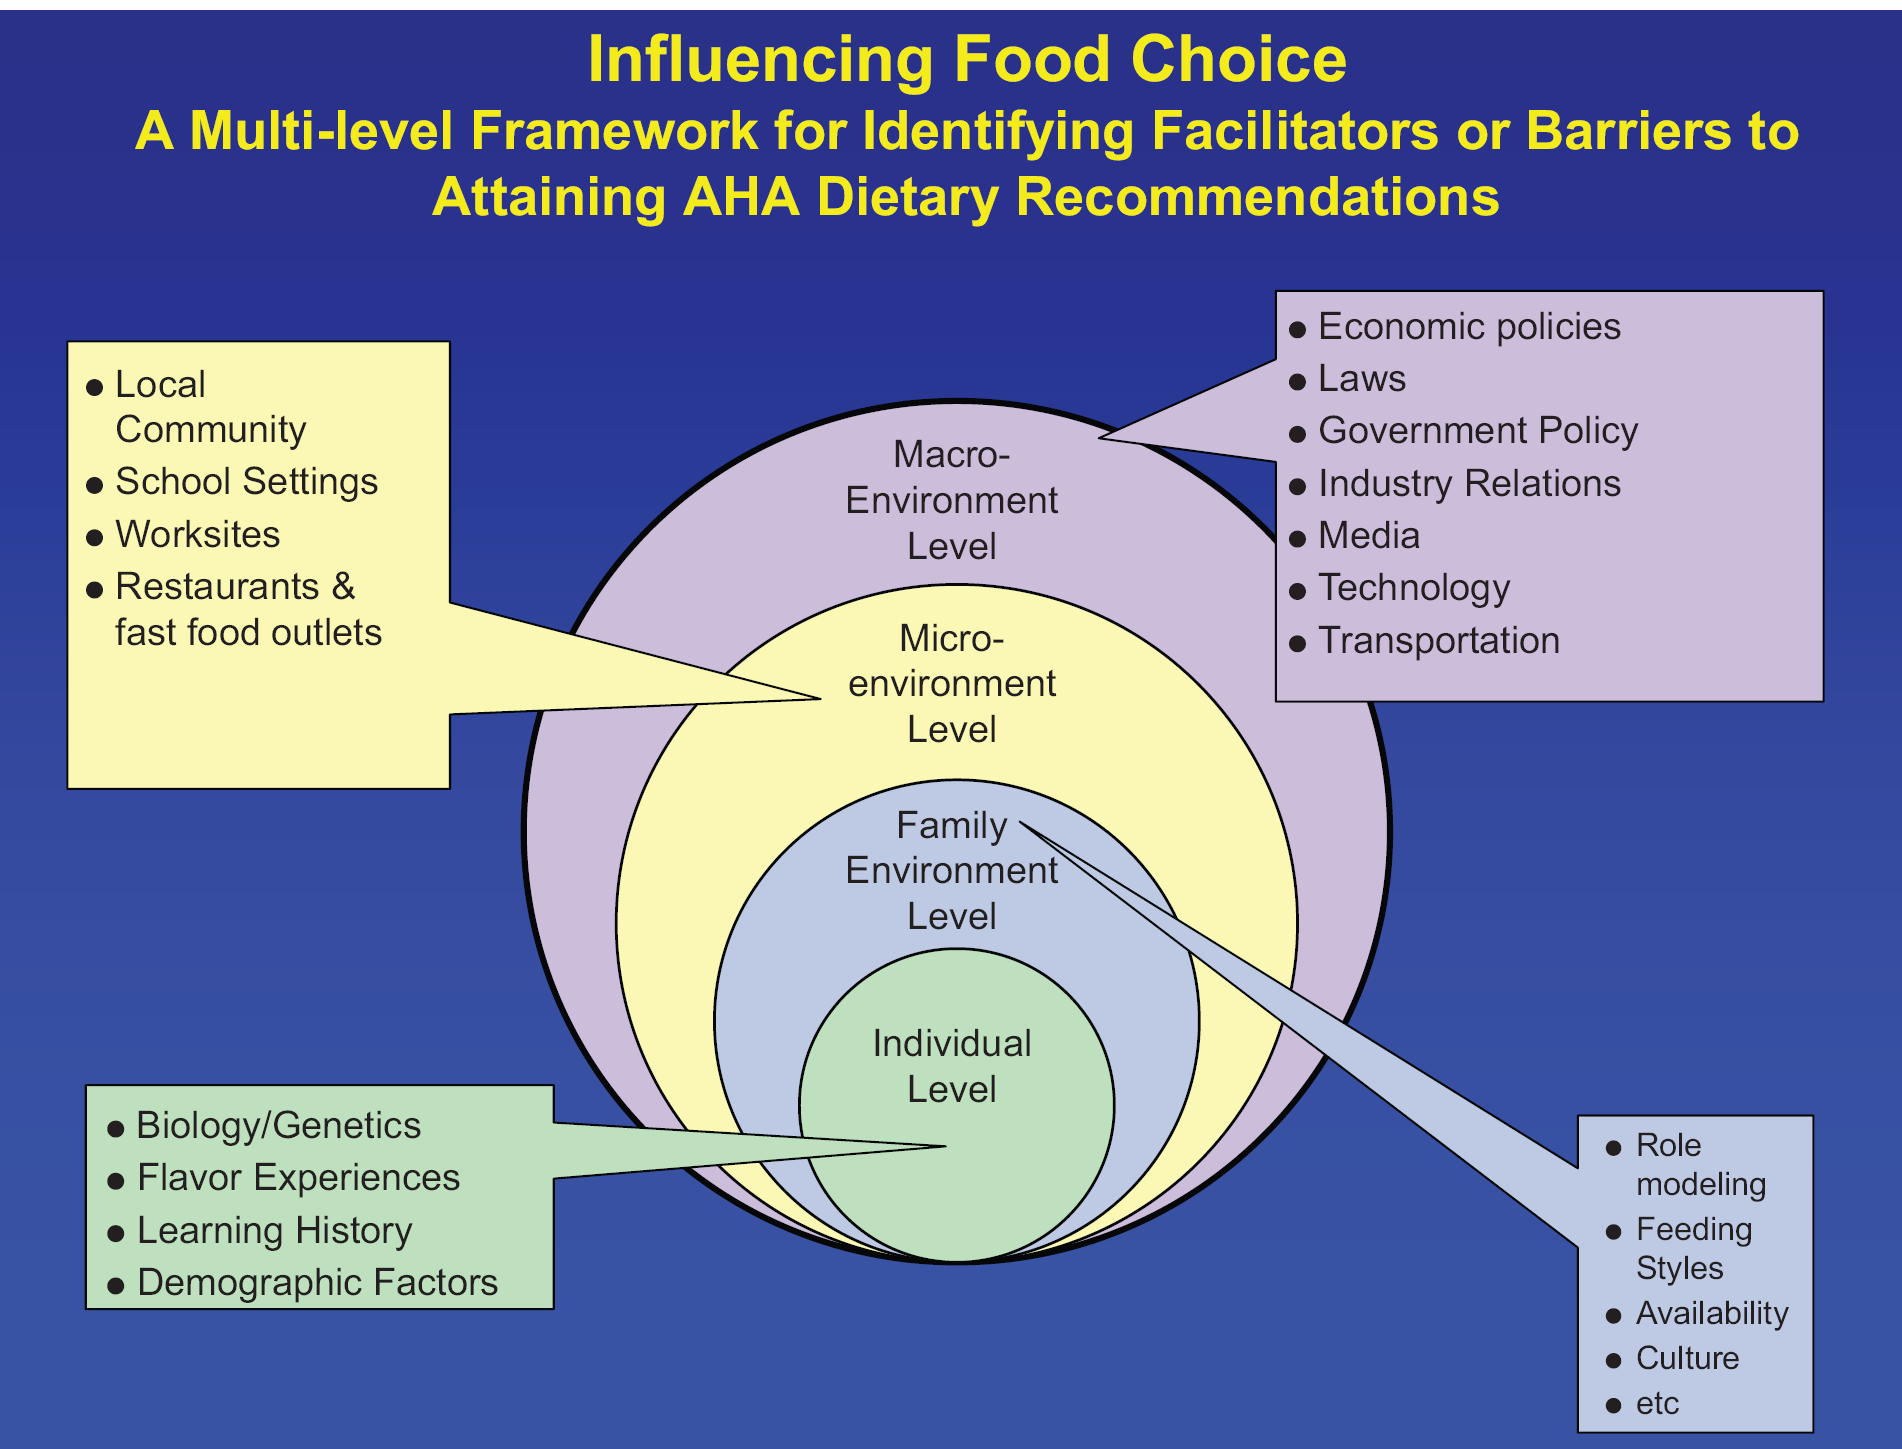 Παράγοντες που επηρεάζουν τις διατροφικές επιλογές και κατ επέκταση την εφαρμογή των διατροφικών συστάσεων επιστημονικών φορέων.